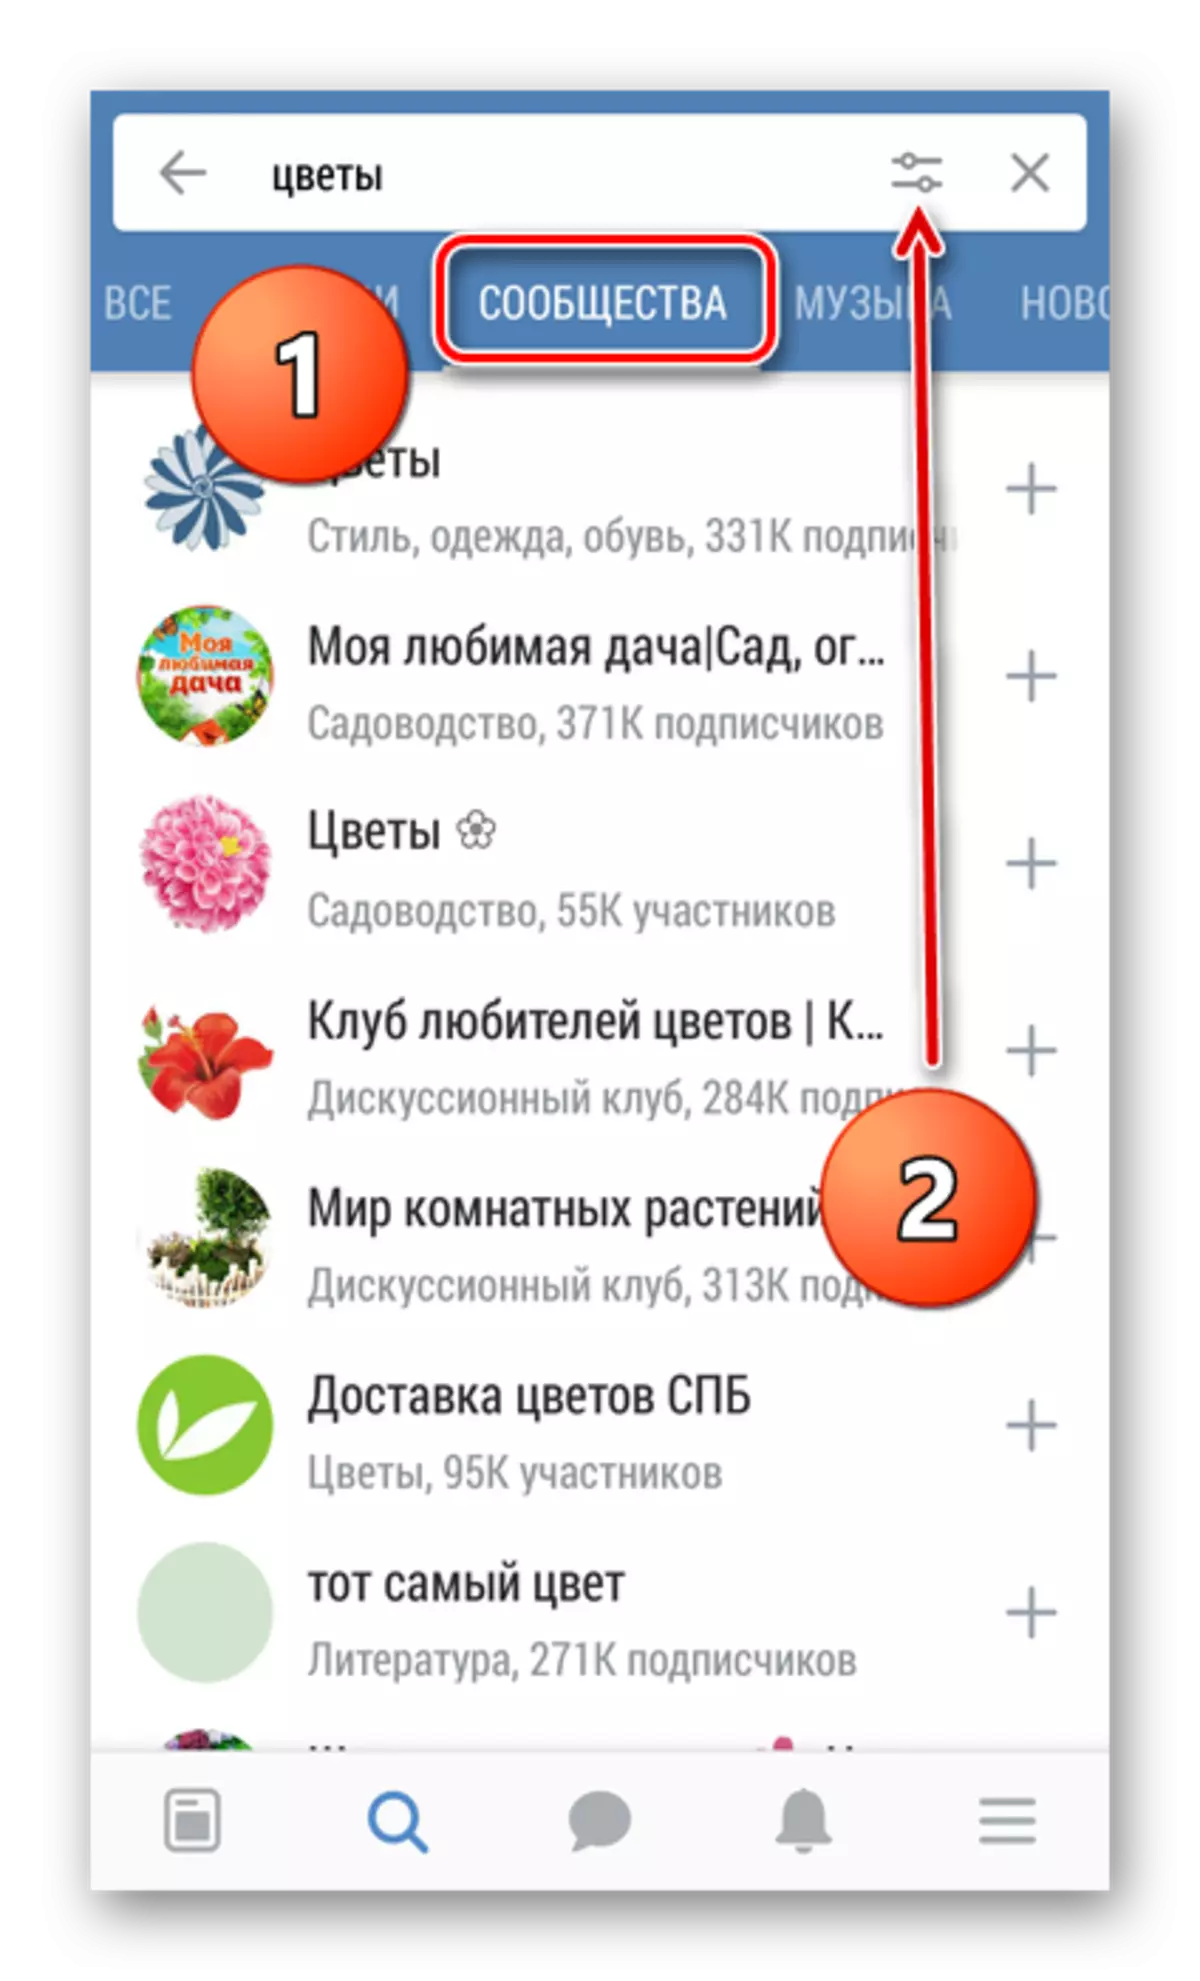 ค้นหากลุ่มใน Vkontakte